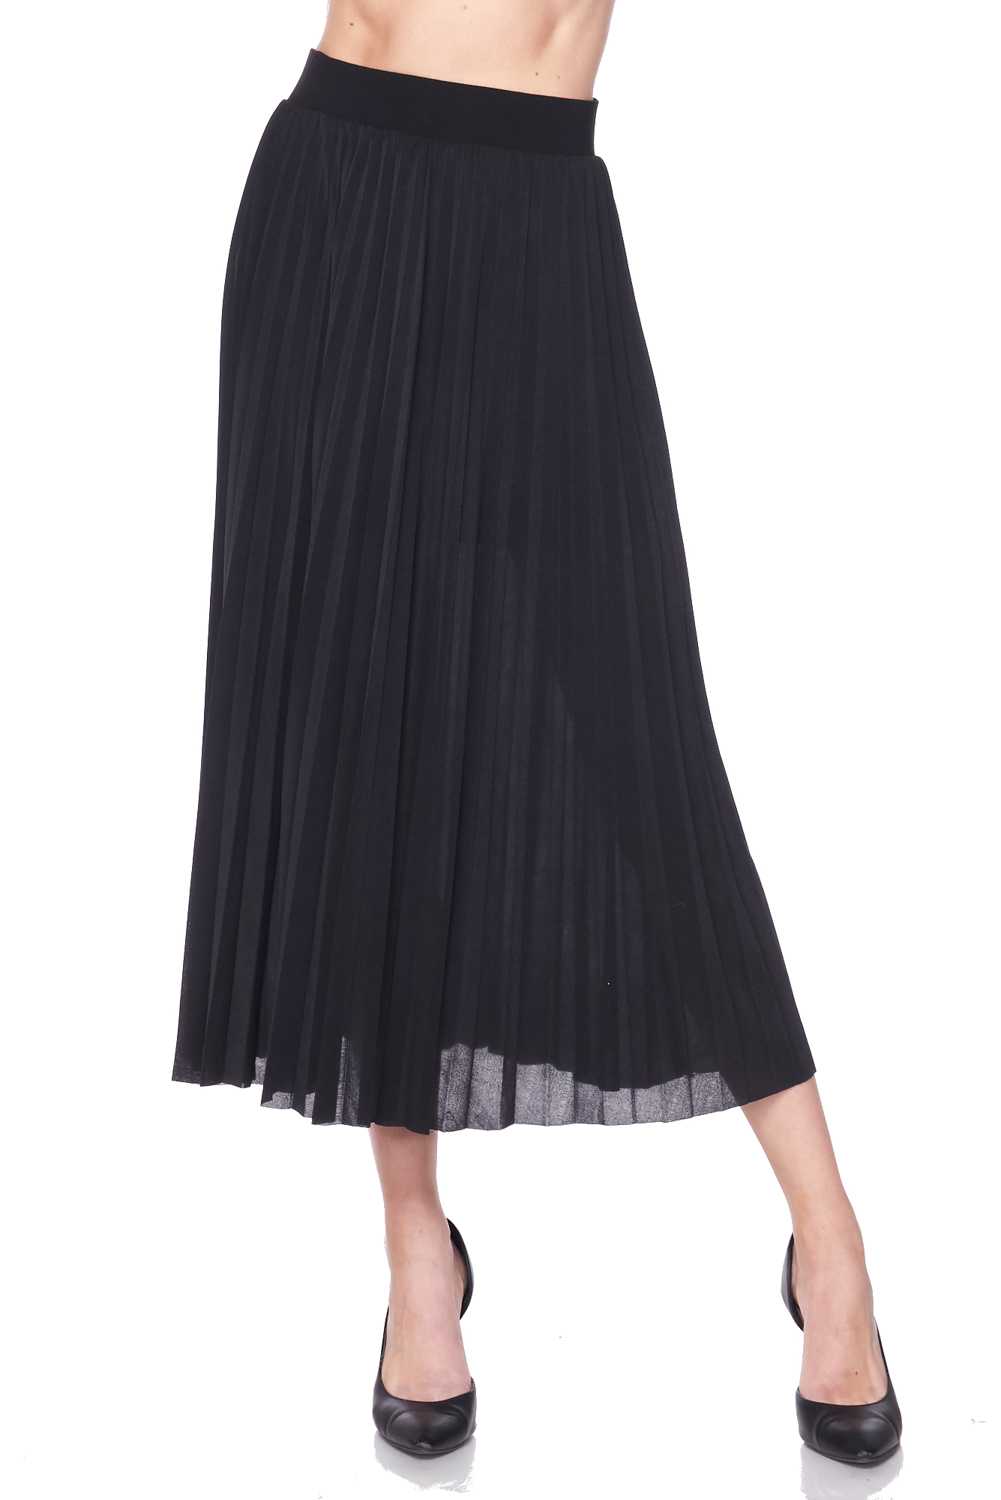 Solid Pleated Midi Skirt - LA7 ONLINE S / BLACK